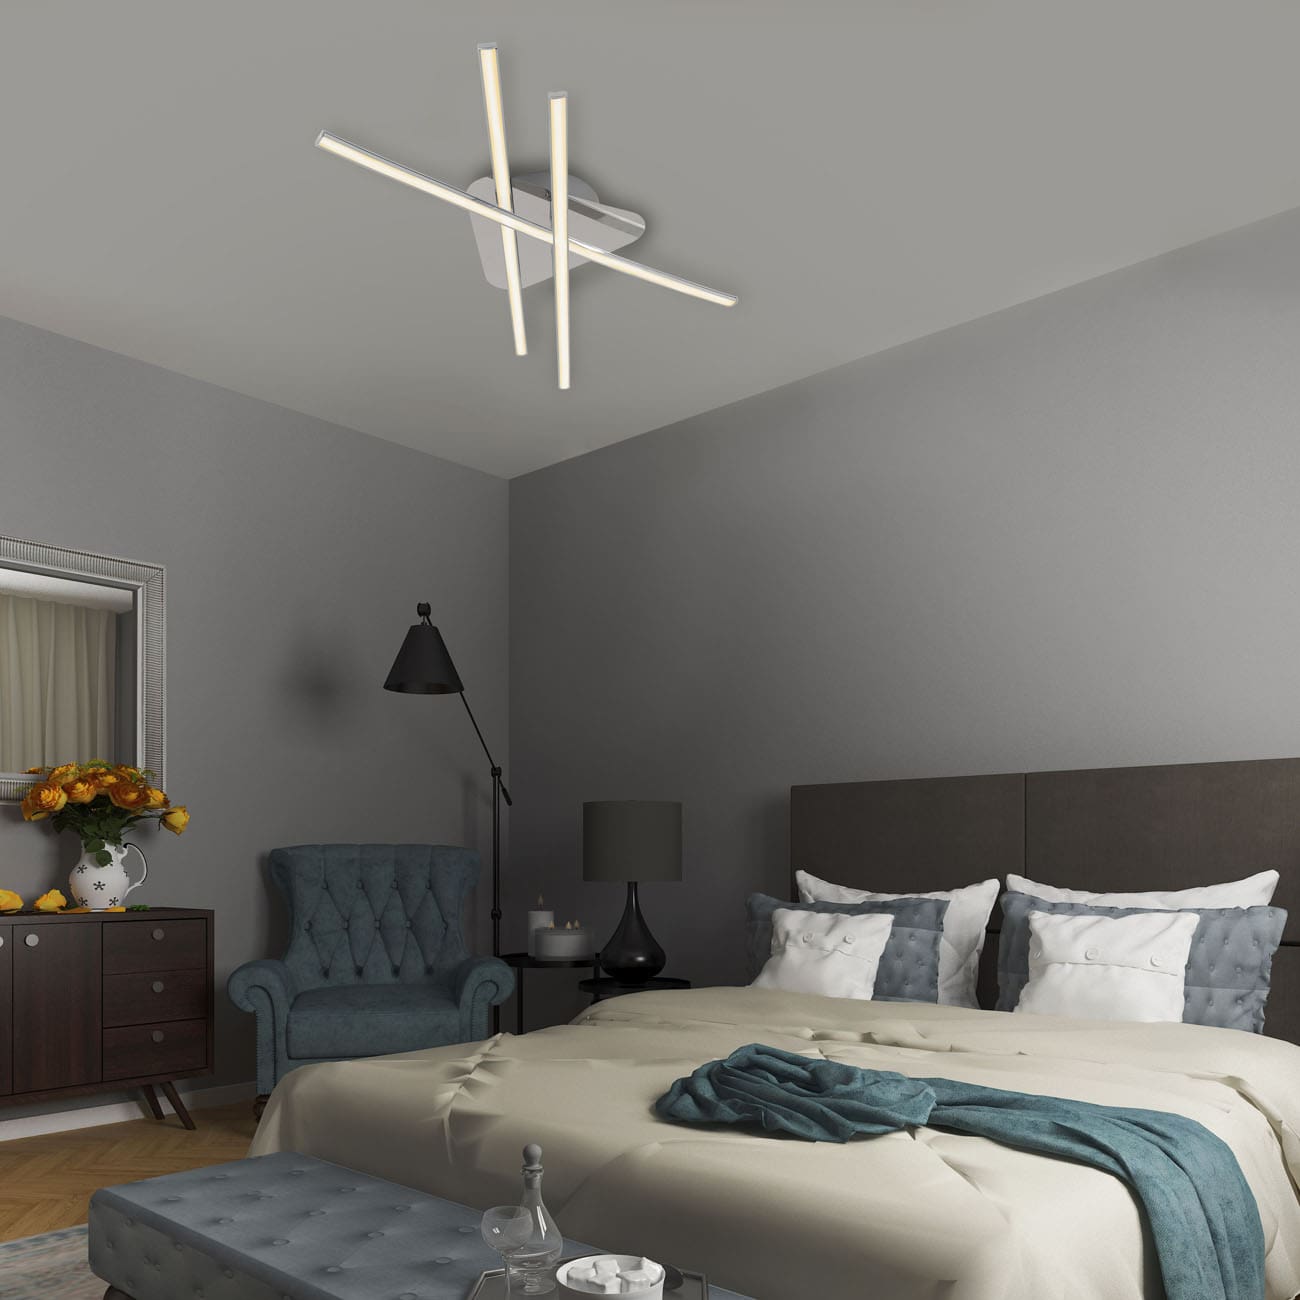 LED Deckenleuchte 59cm - 3-flammig - moderne Deckenlampe Wohnzimmer Flur 230V schwenkbar 24W 2400lm 3000K warmweiß | chrom - 2